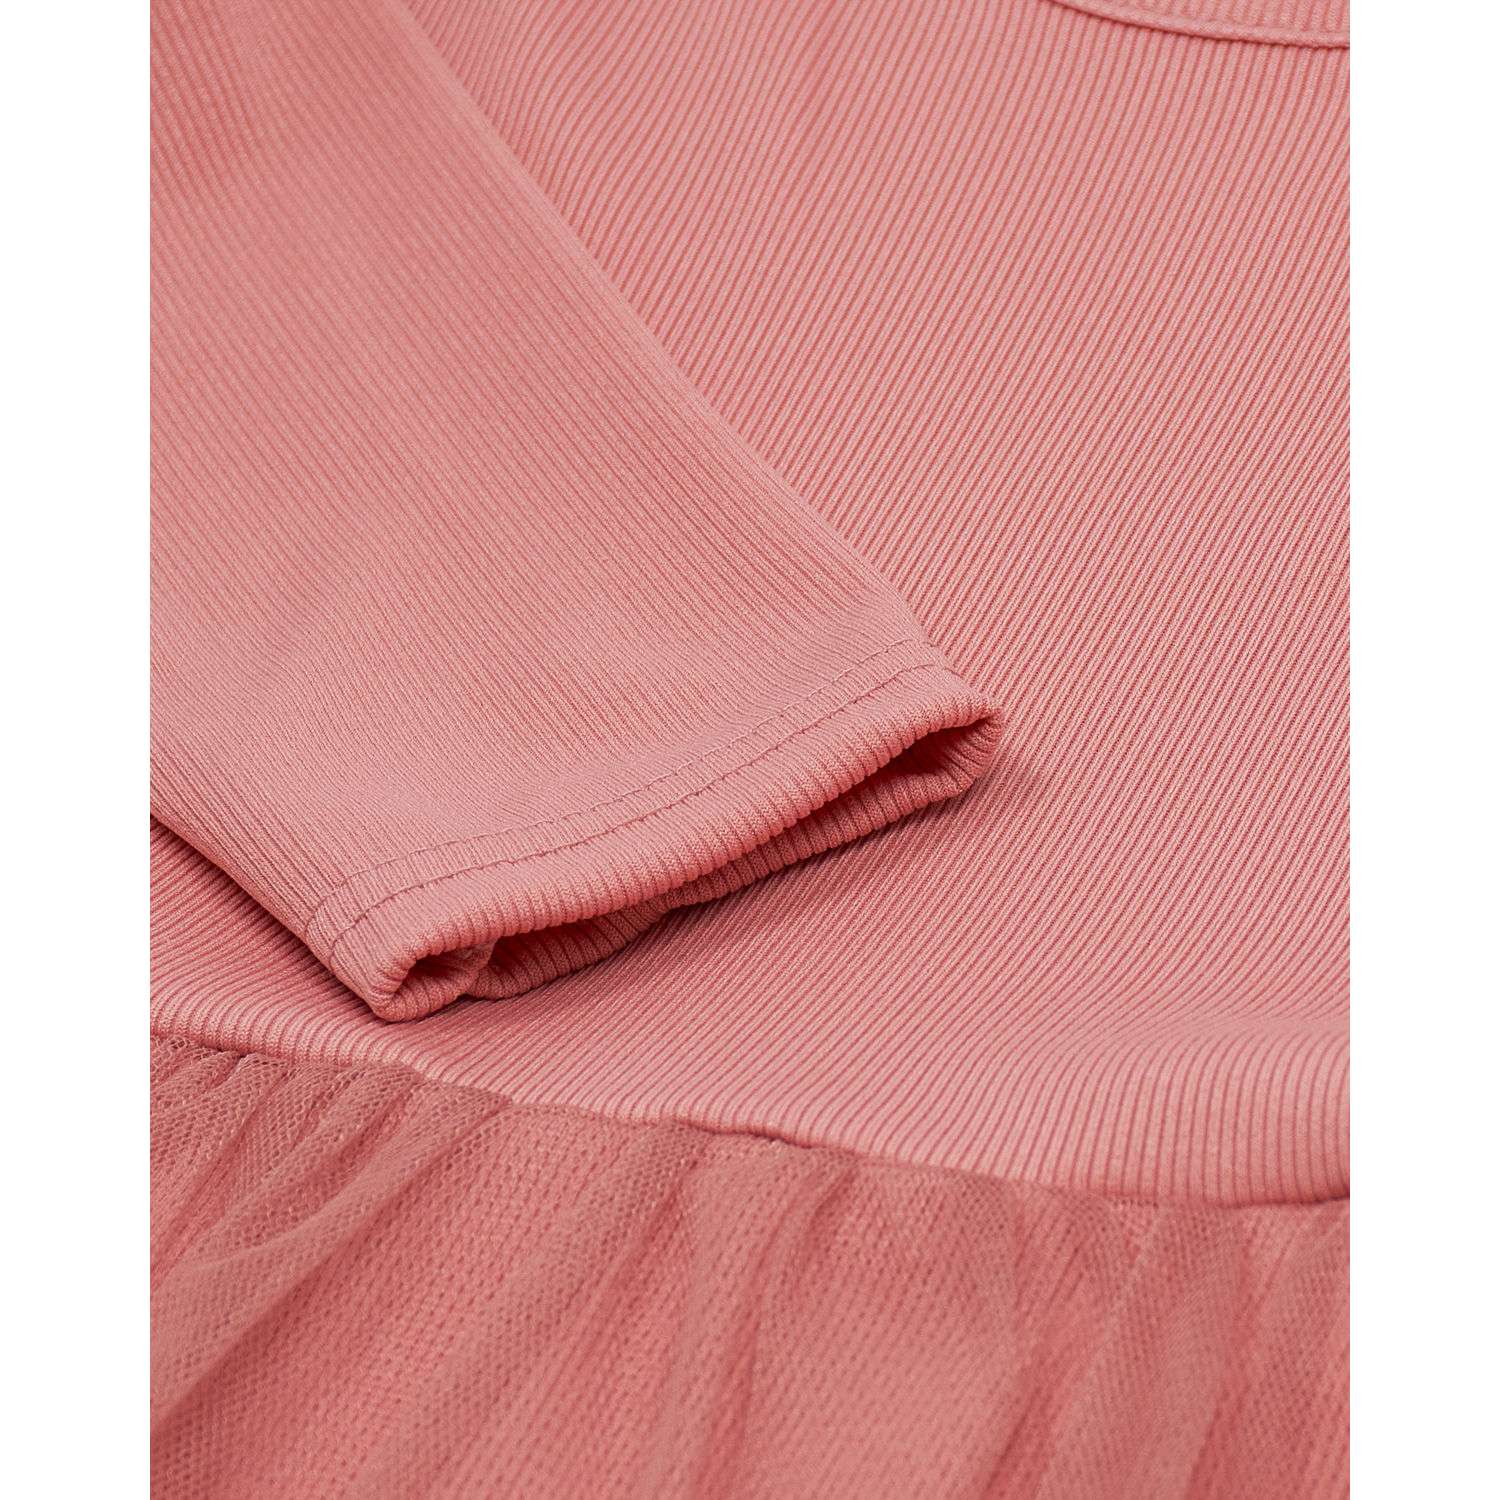 Платье Katlen БР-Пл-007/Розовый - фото 7